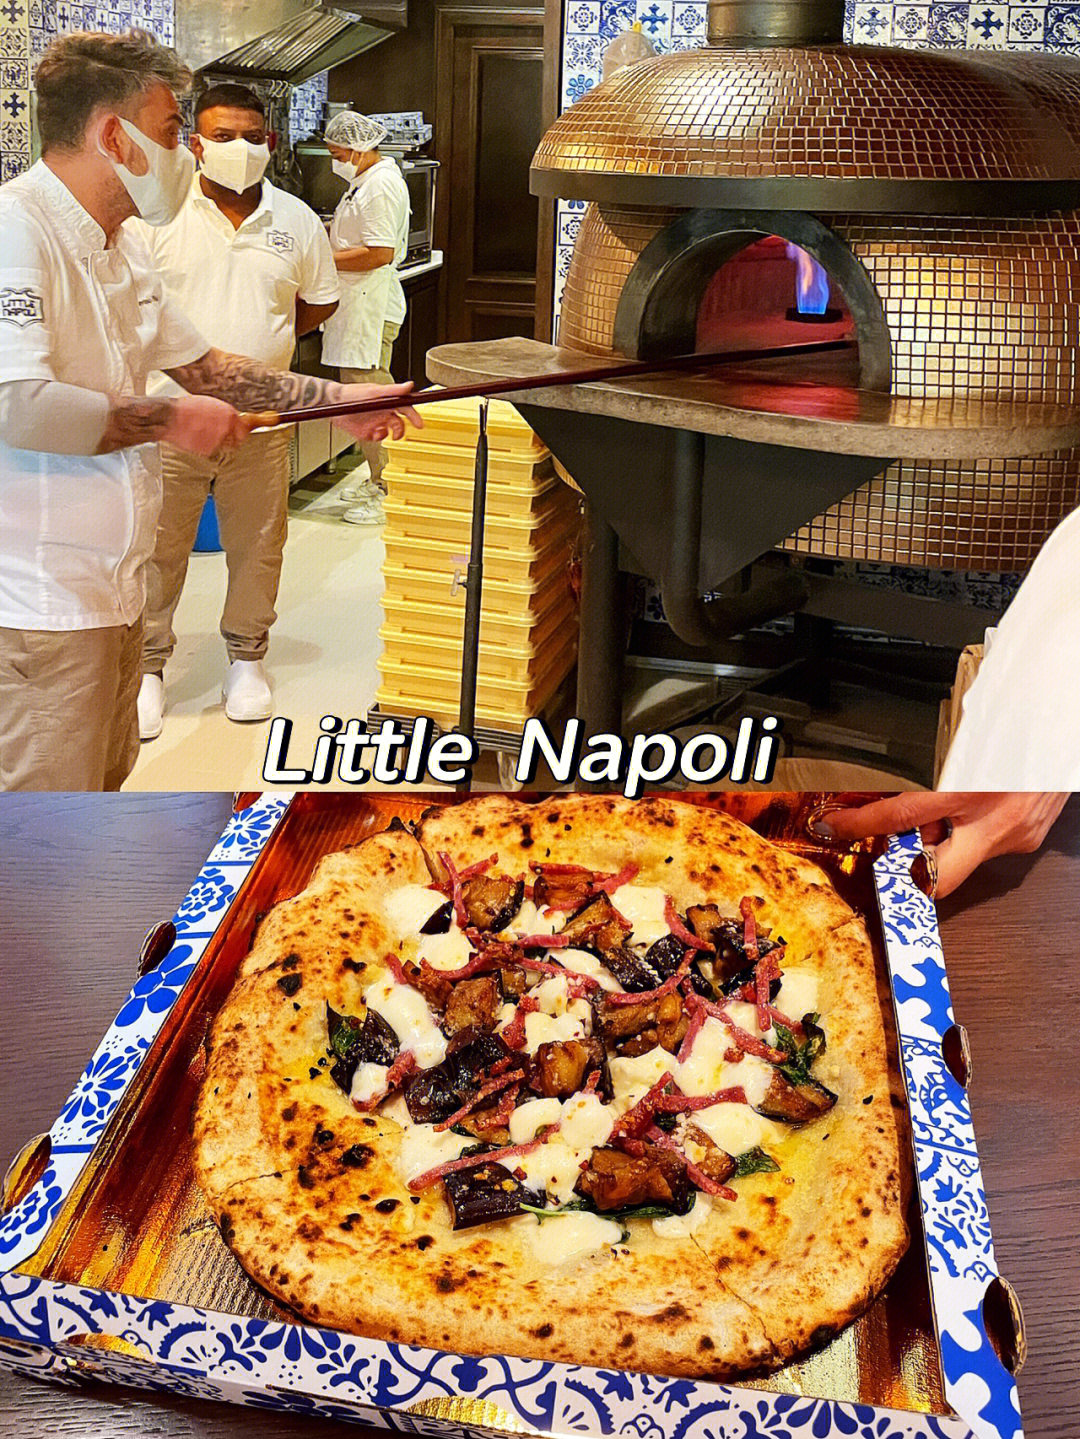 专程前往其实是对那个烤pizza的石窑充满了兴趣,据说是从拿波里定制的